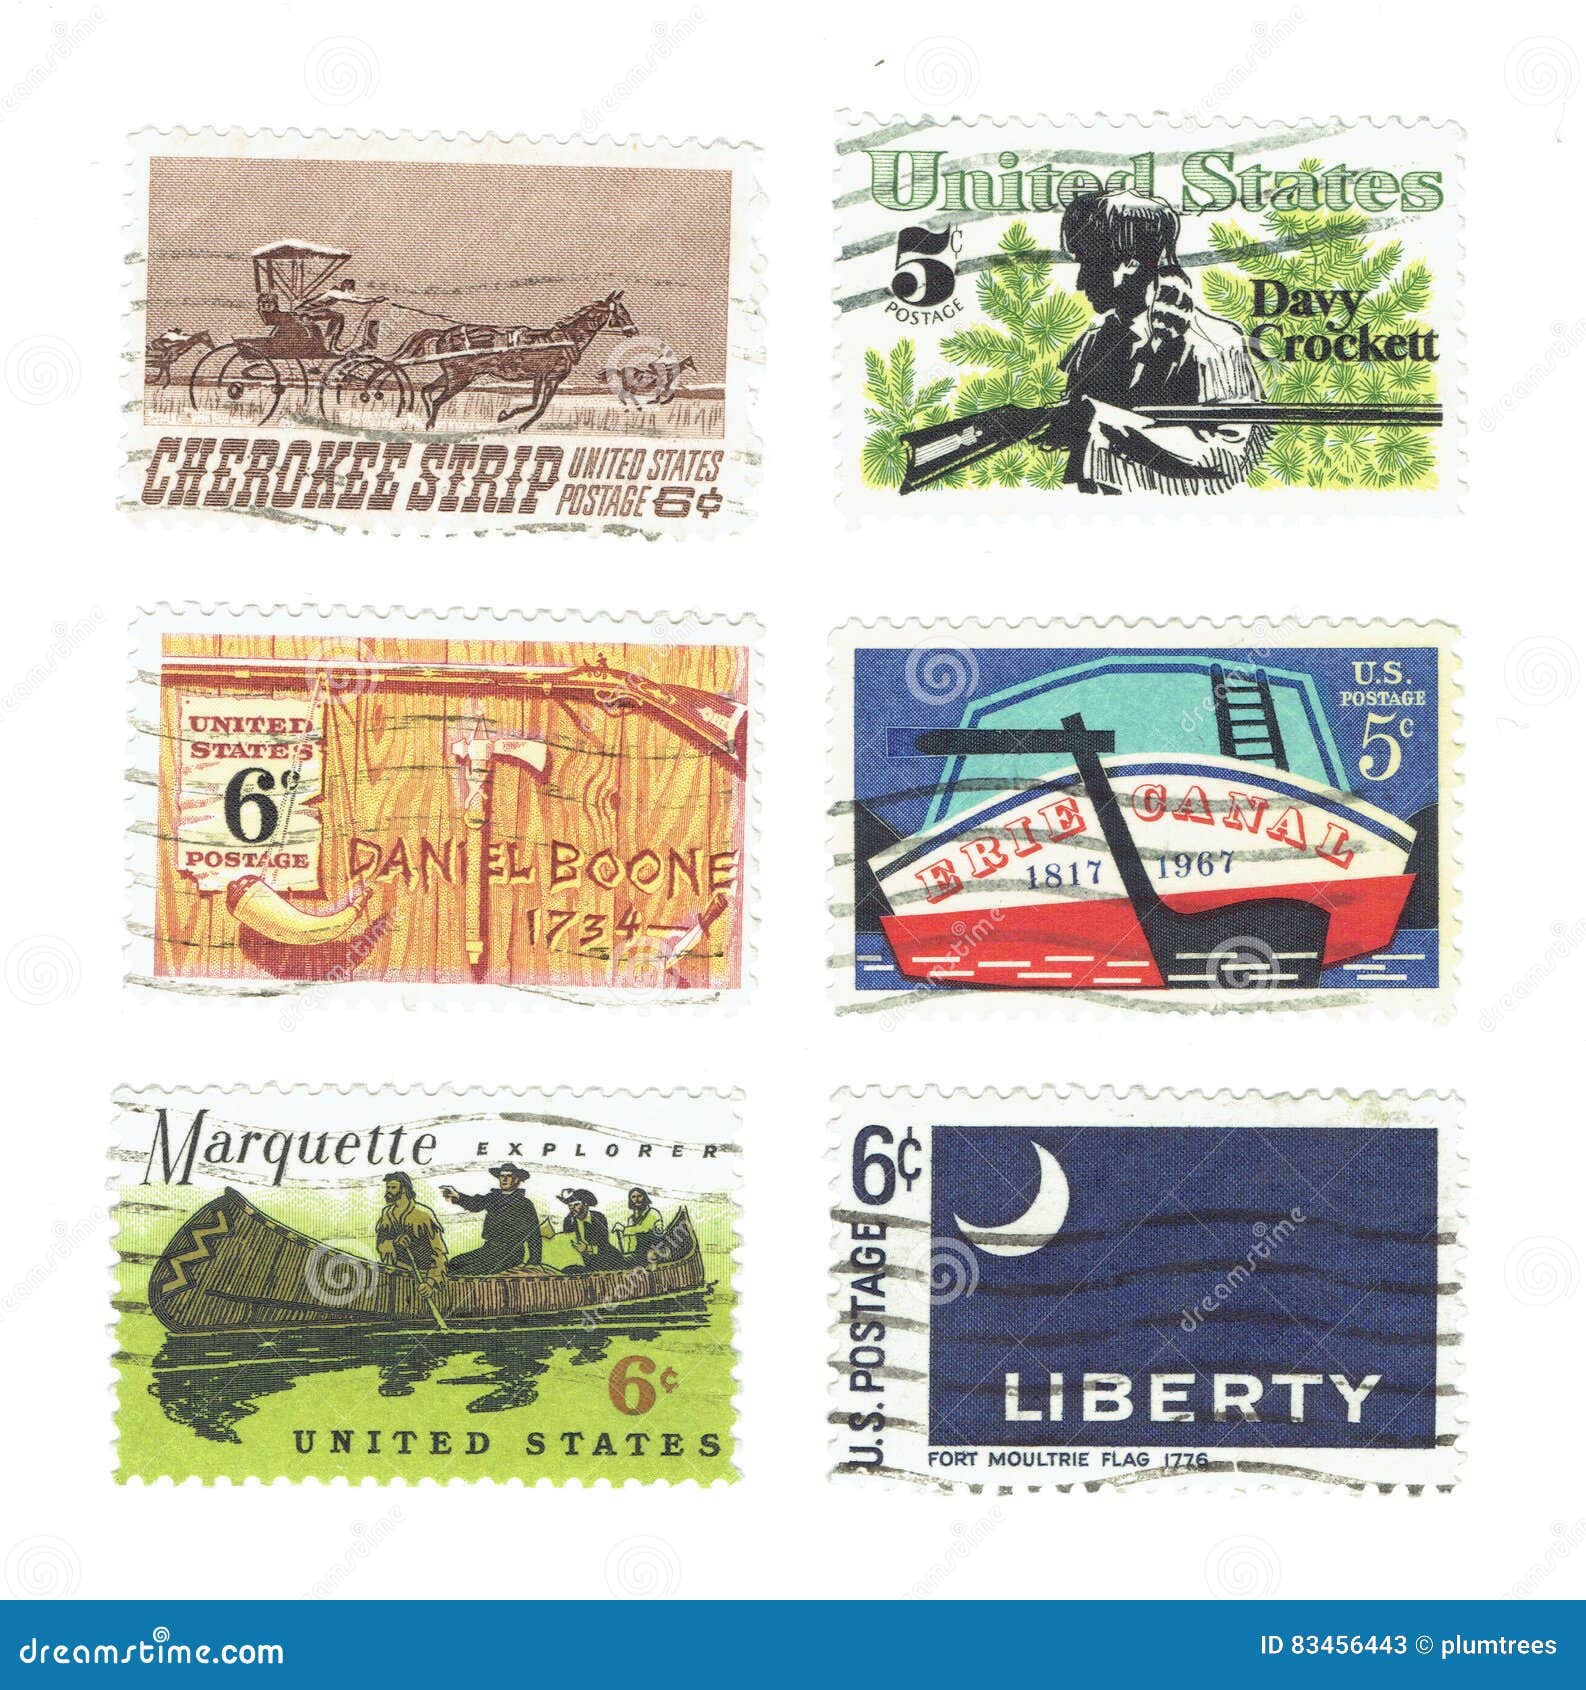 Vintage Davy Crockett Stamp Book